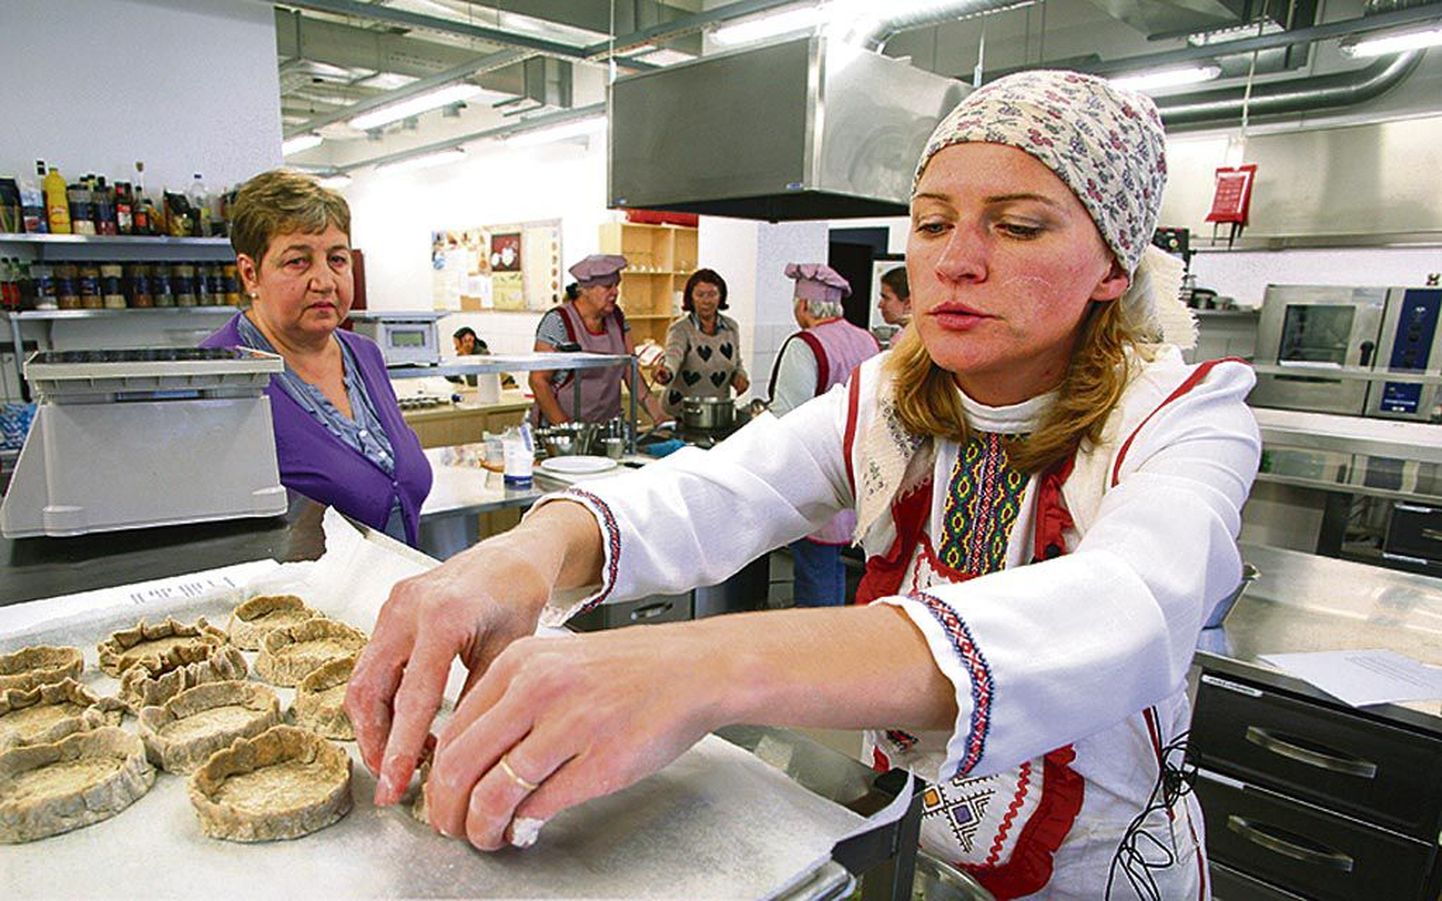 Vadjalased, isurid, setod ja liivlased õpetavad Ljudmila Ruukeliga huvilisi rahvuslikke toite valmistama.